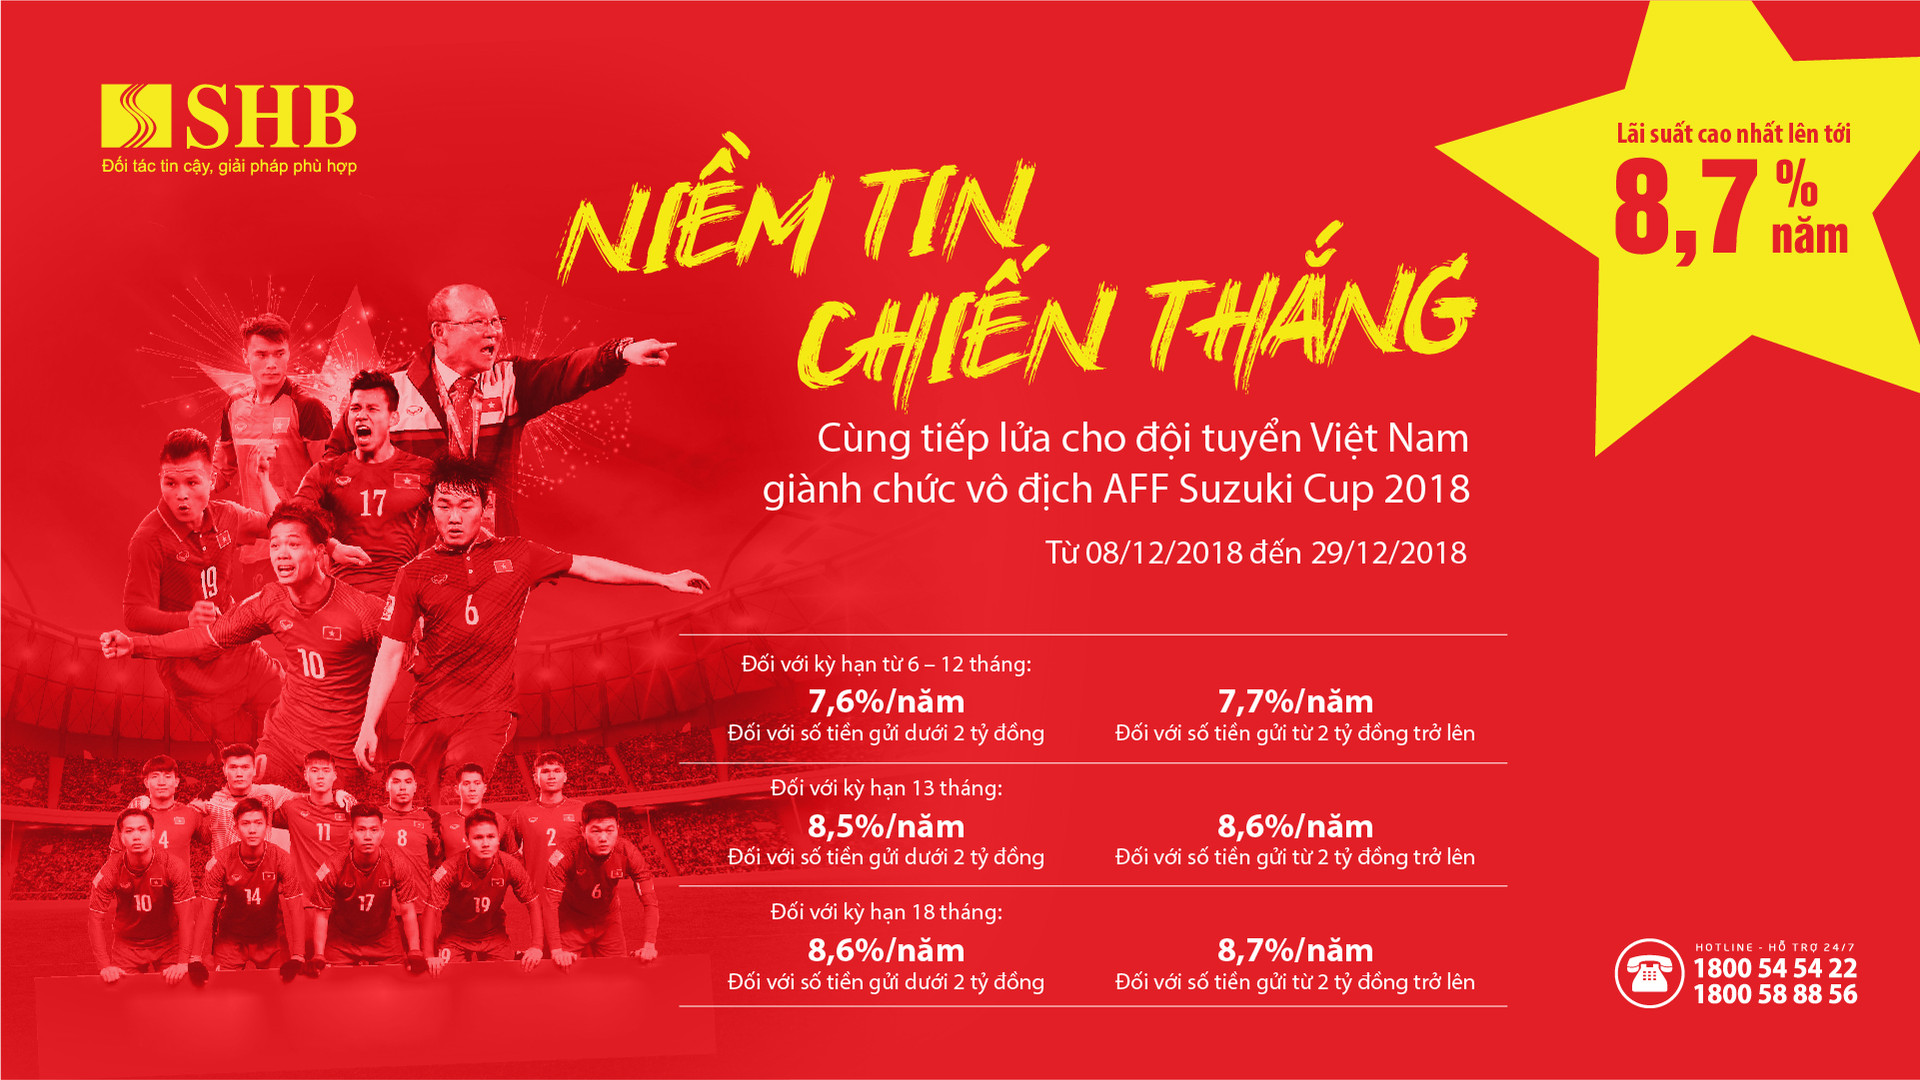 Trọn niềm tin chiến thắng cùng đội tuyển Việt Nam tại AFF Cup 2018, SHB tăng lãi suất lên đến 8.7%/Năm.